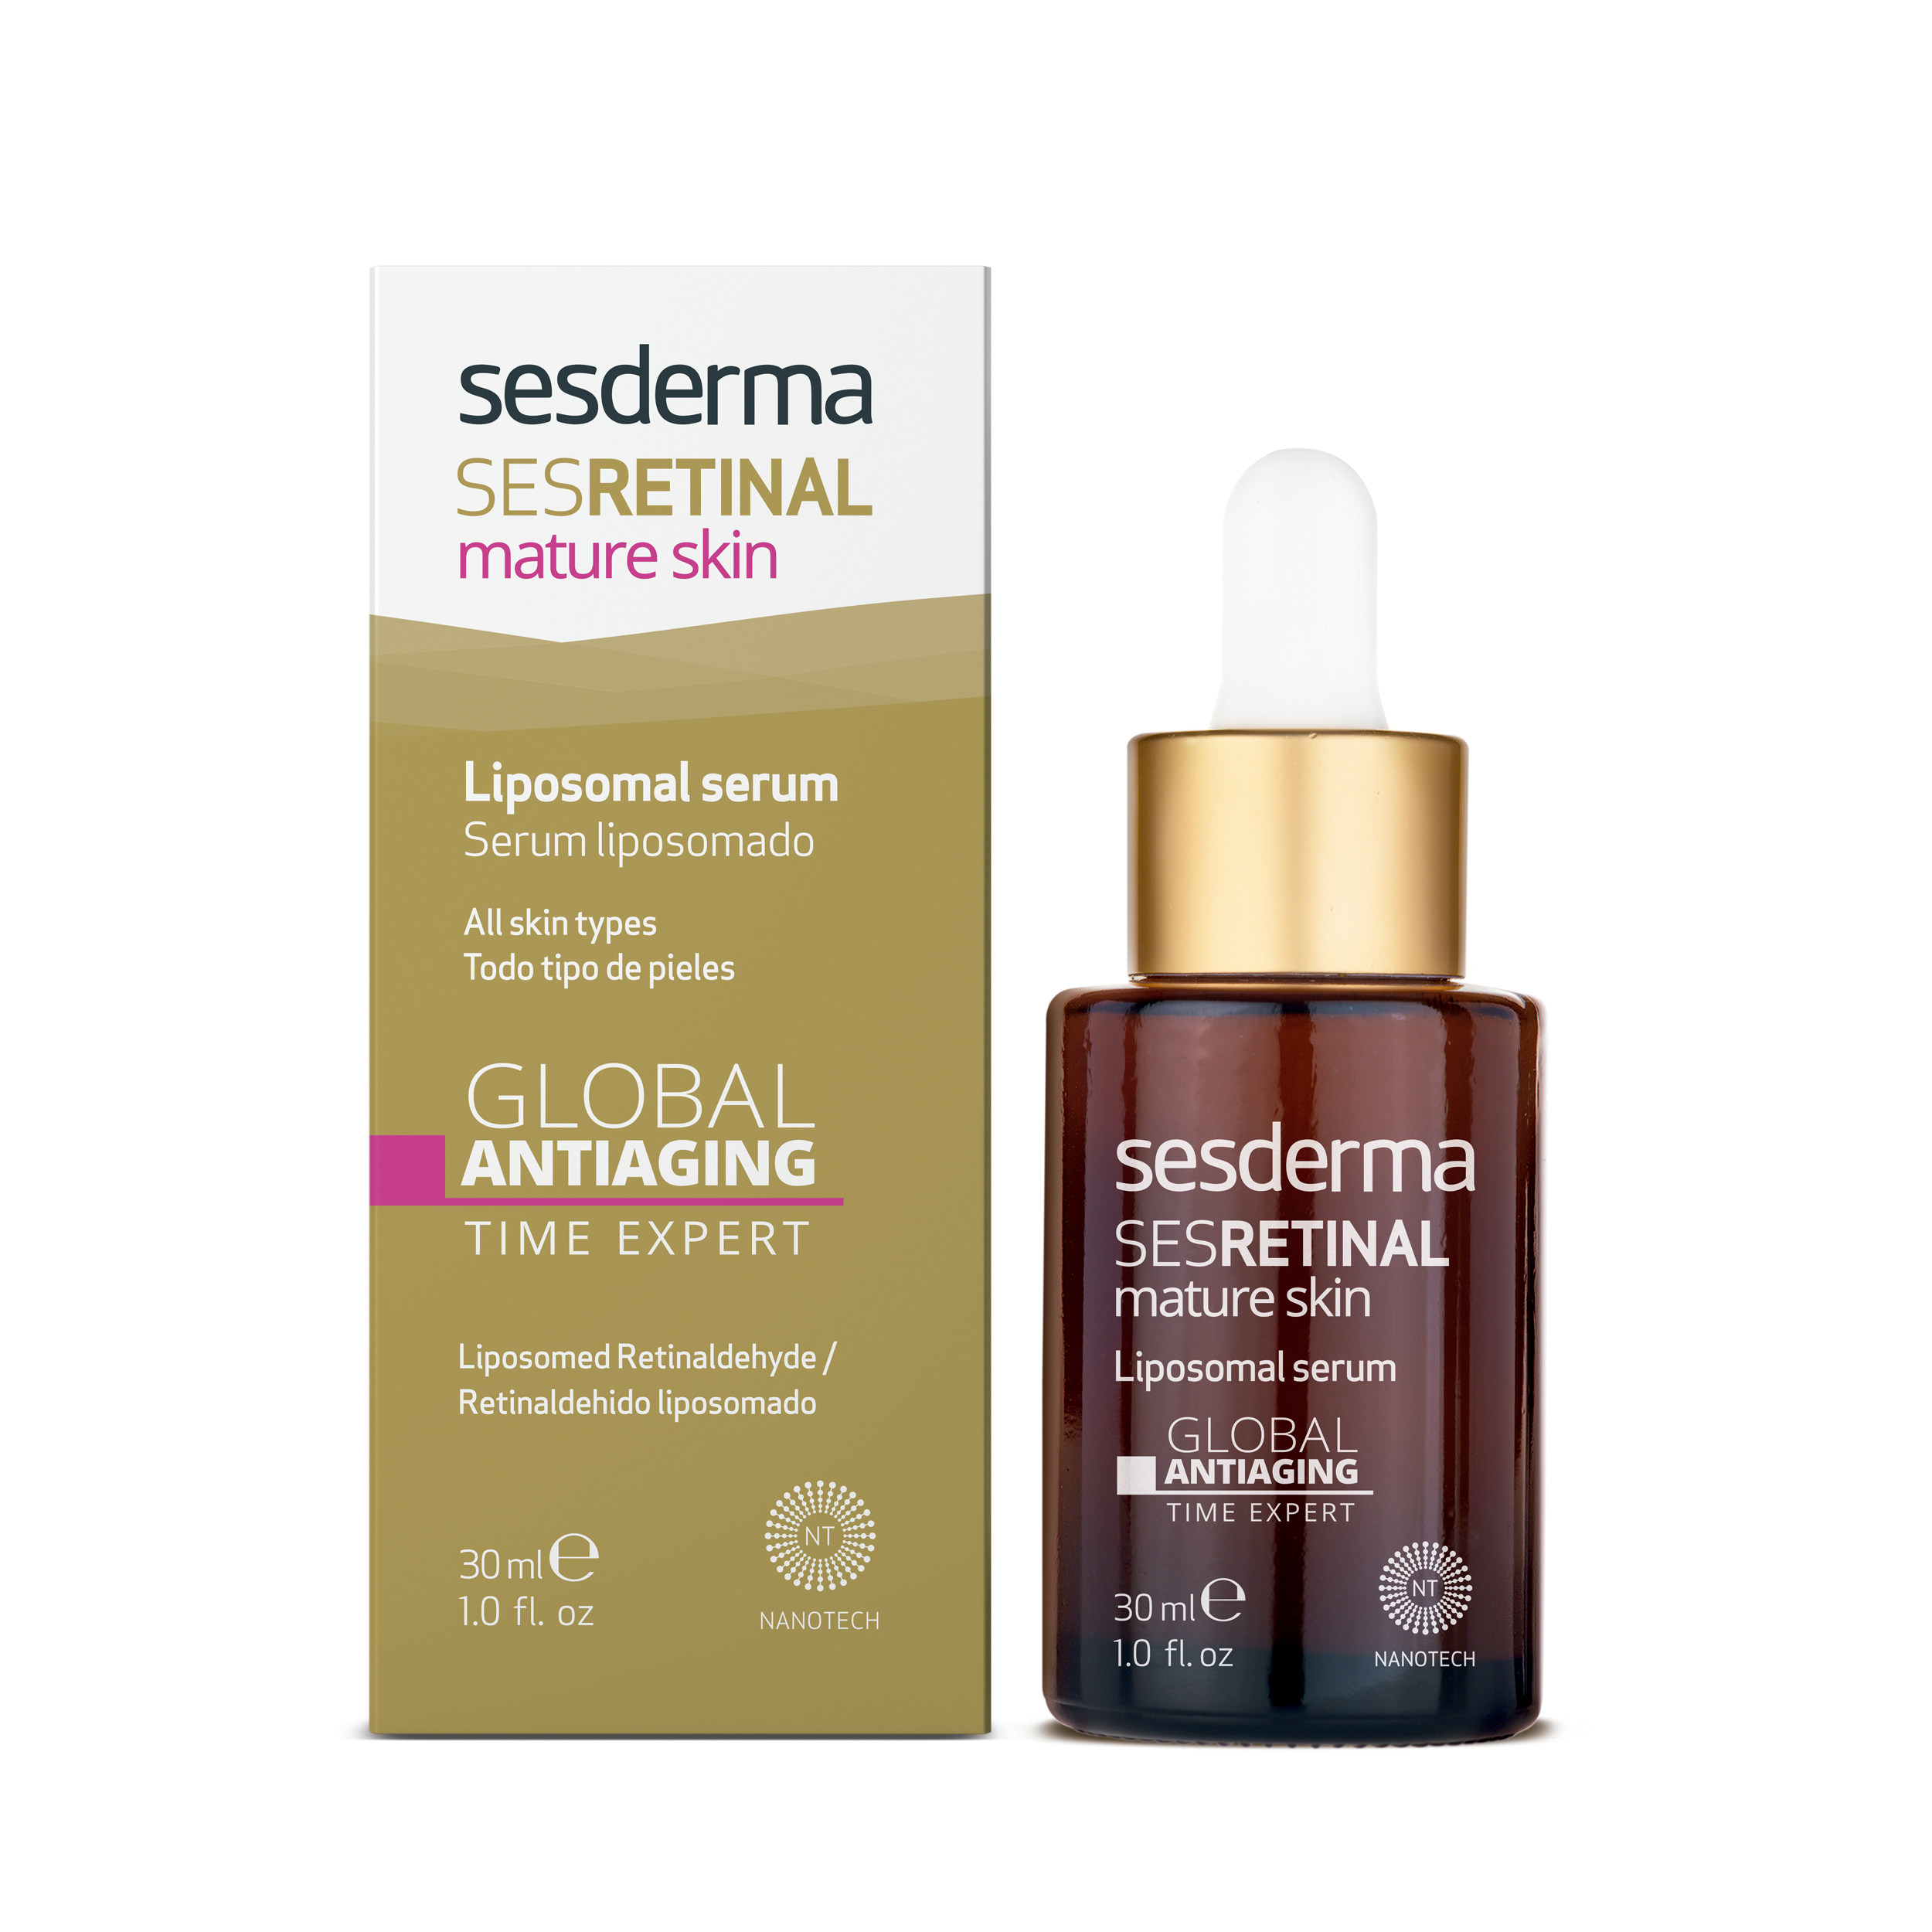 SESRETINAL Mature Skin Liposomal serum 30ml